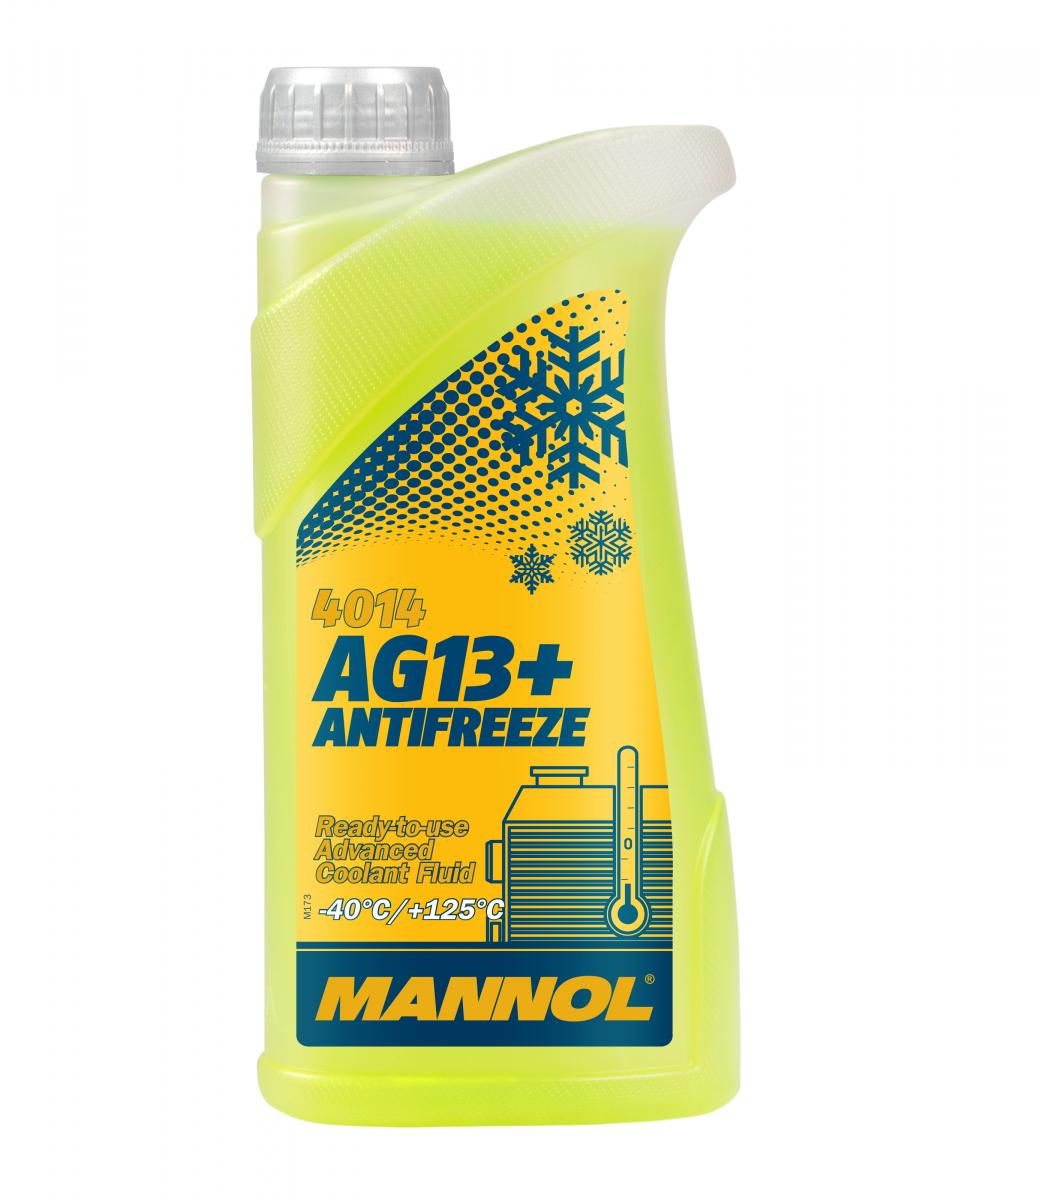 1 Liter MANNOL AG13+ Kühlflüssigkeit Antifreeze Fertiggemisch -40°C gelb G13+